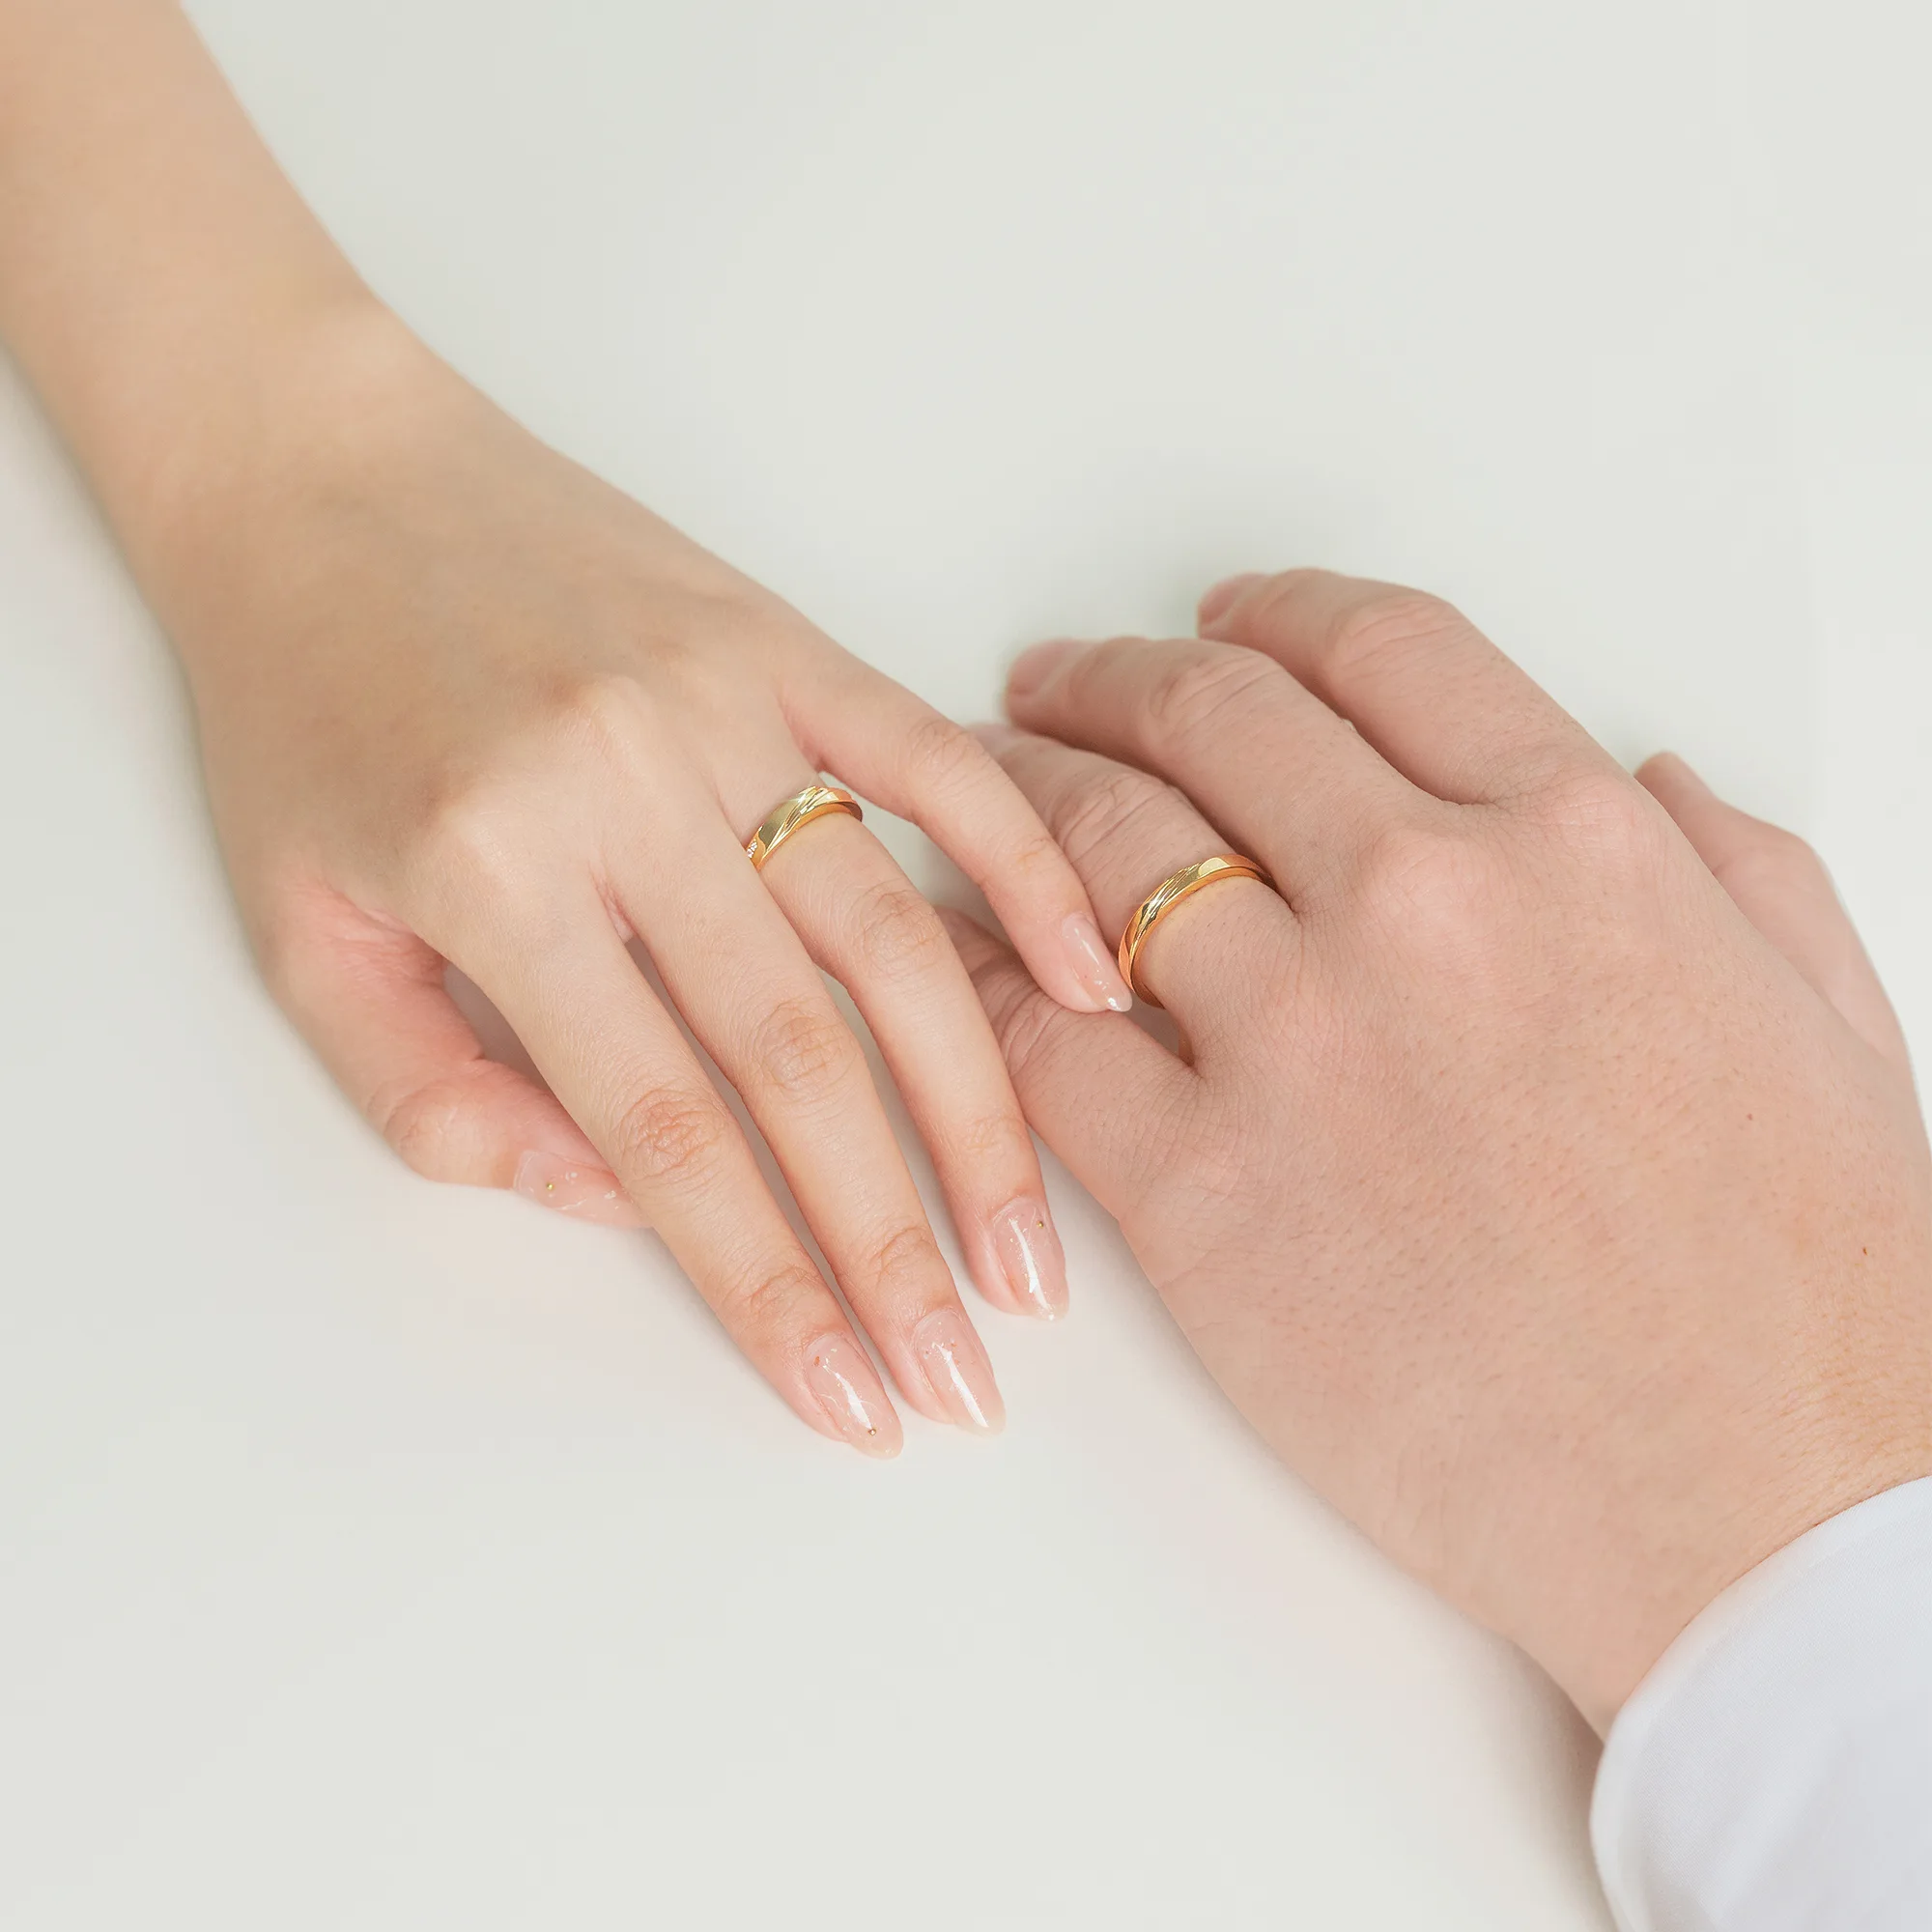  Cặp nhẫn cưới truyền thống NCC1046 6